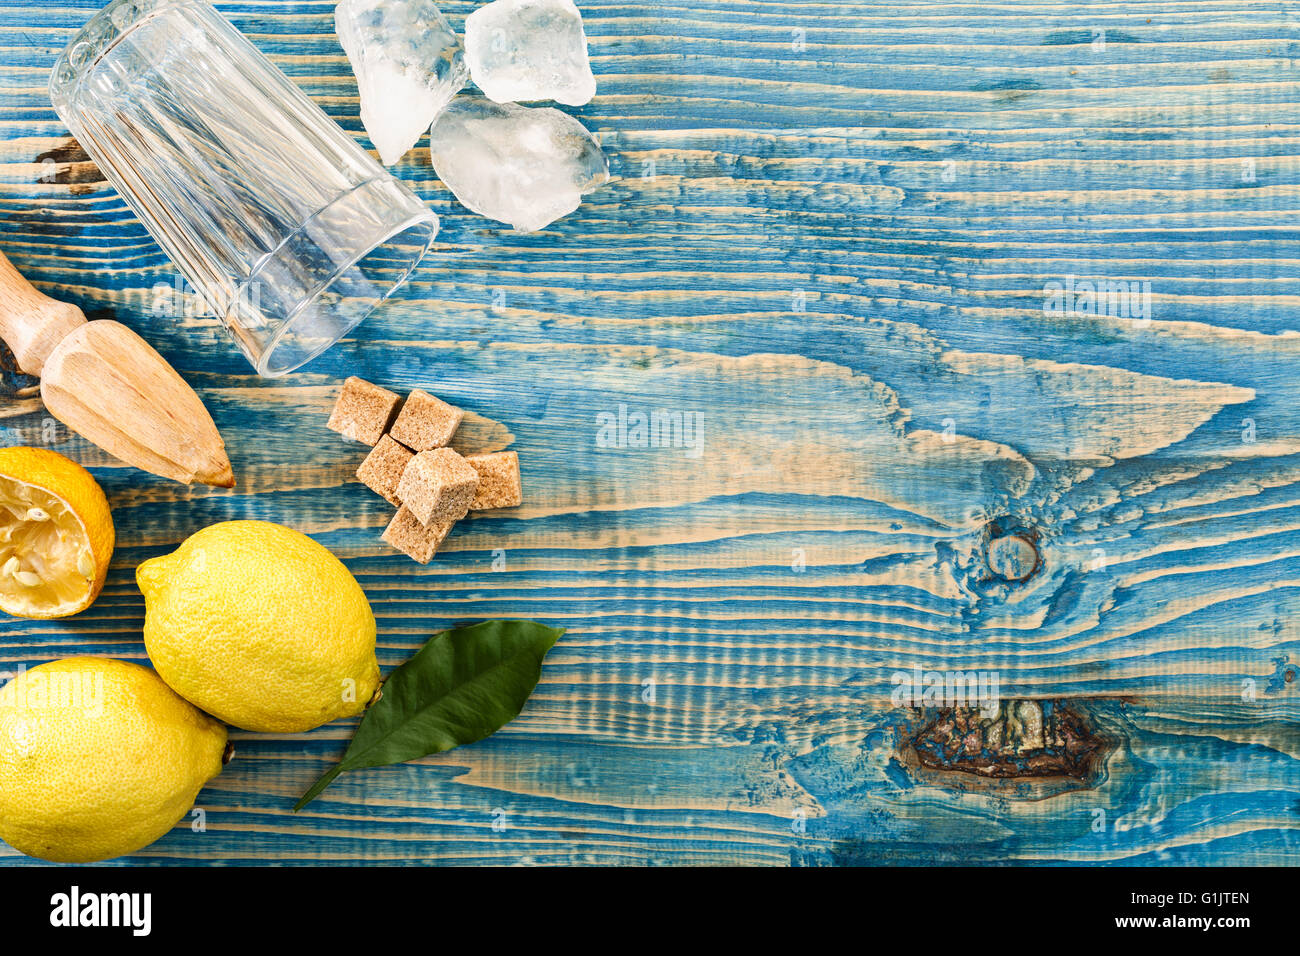 Préparation de la limonade, les ingrédients pour la limonade sur une table en bois Banque D'Images